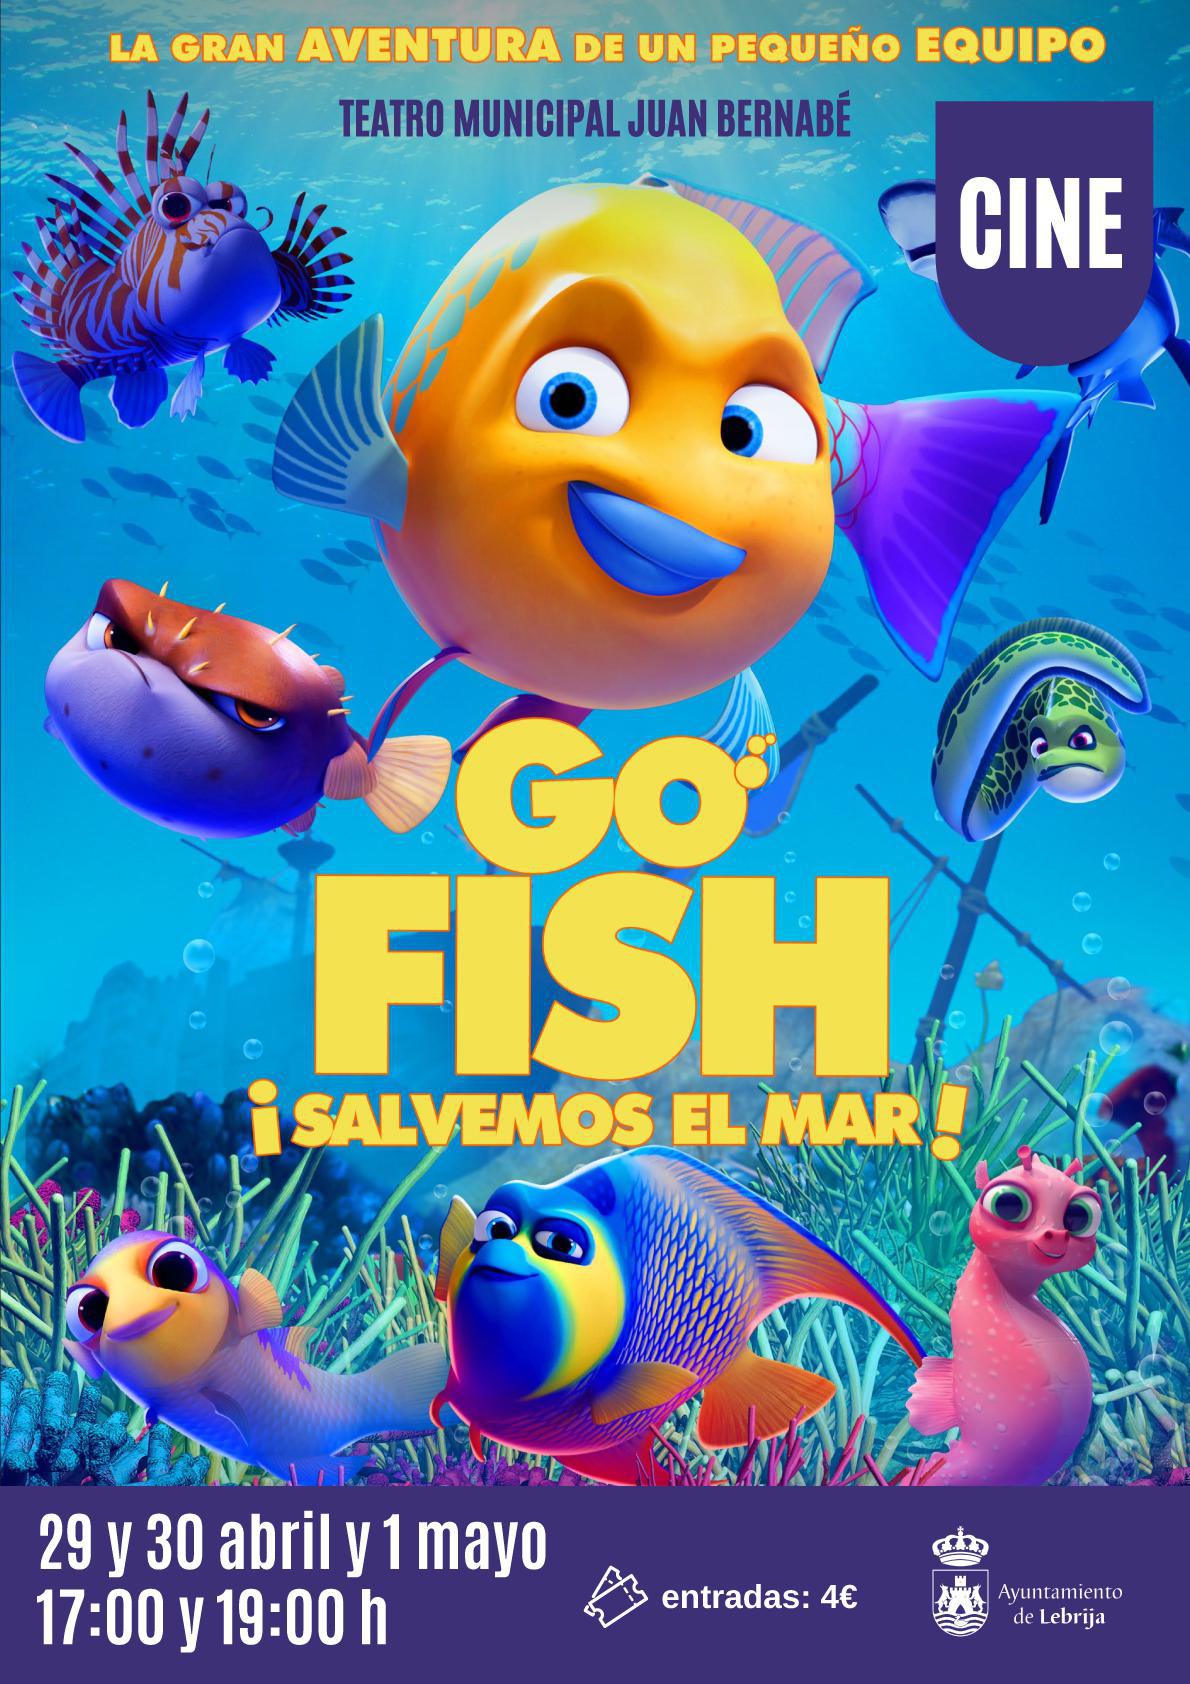 Cine - Go Fish ¡Salvemos el mar!